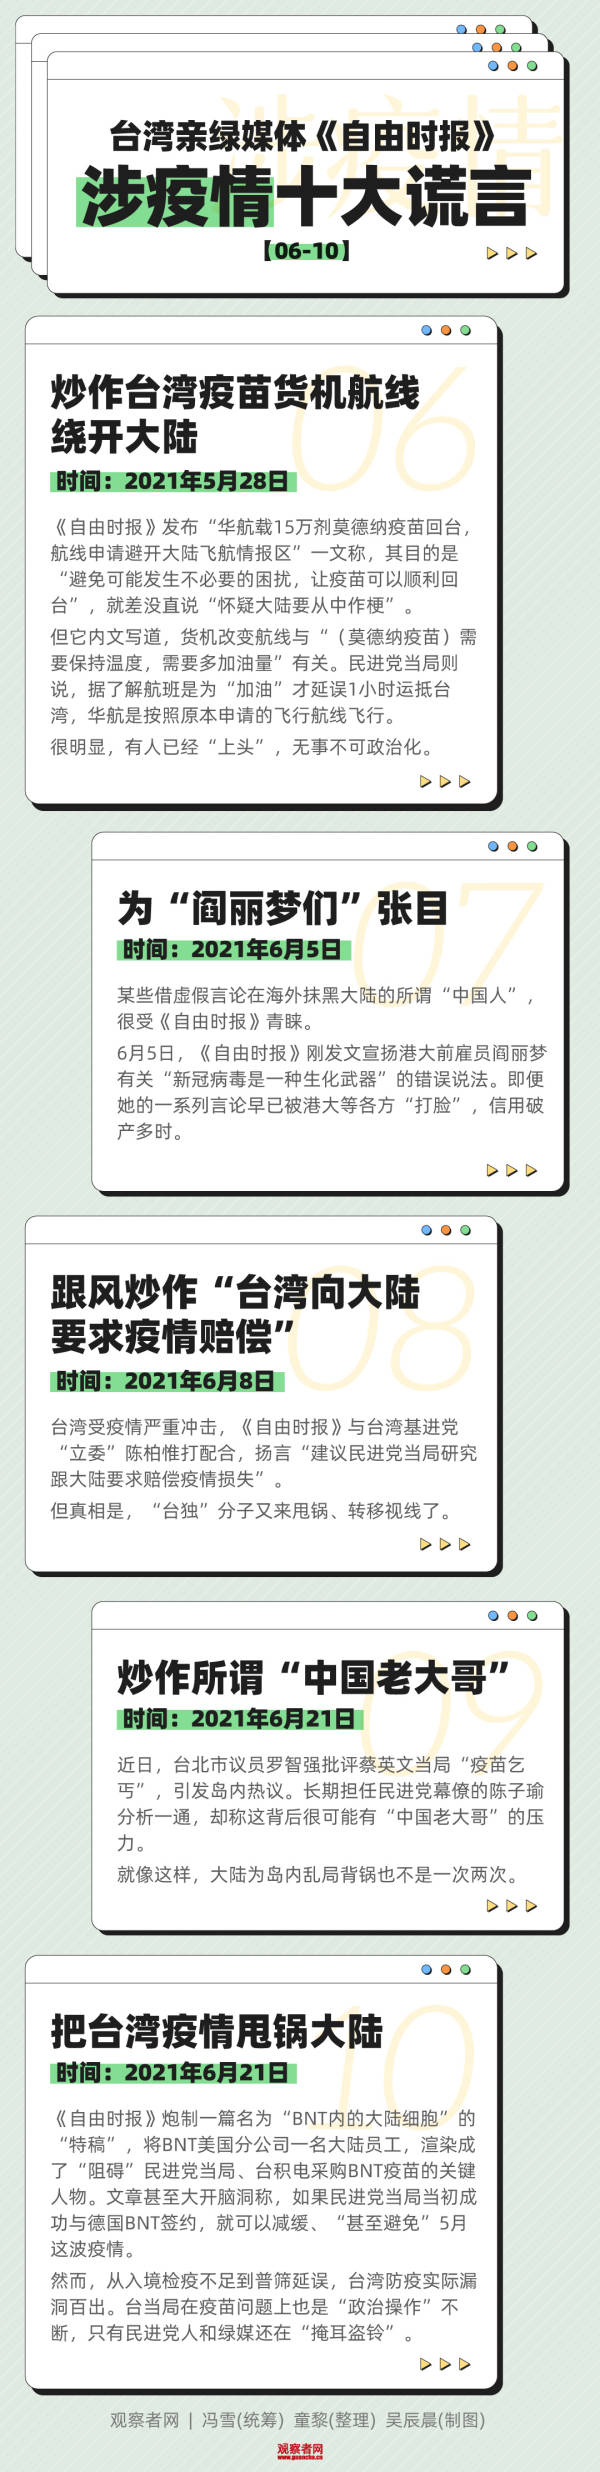 揭批臺親綠媒體《自由時報》涉疫情十大謊言